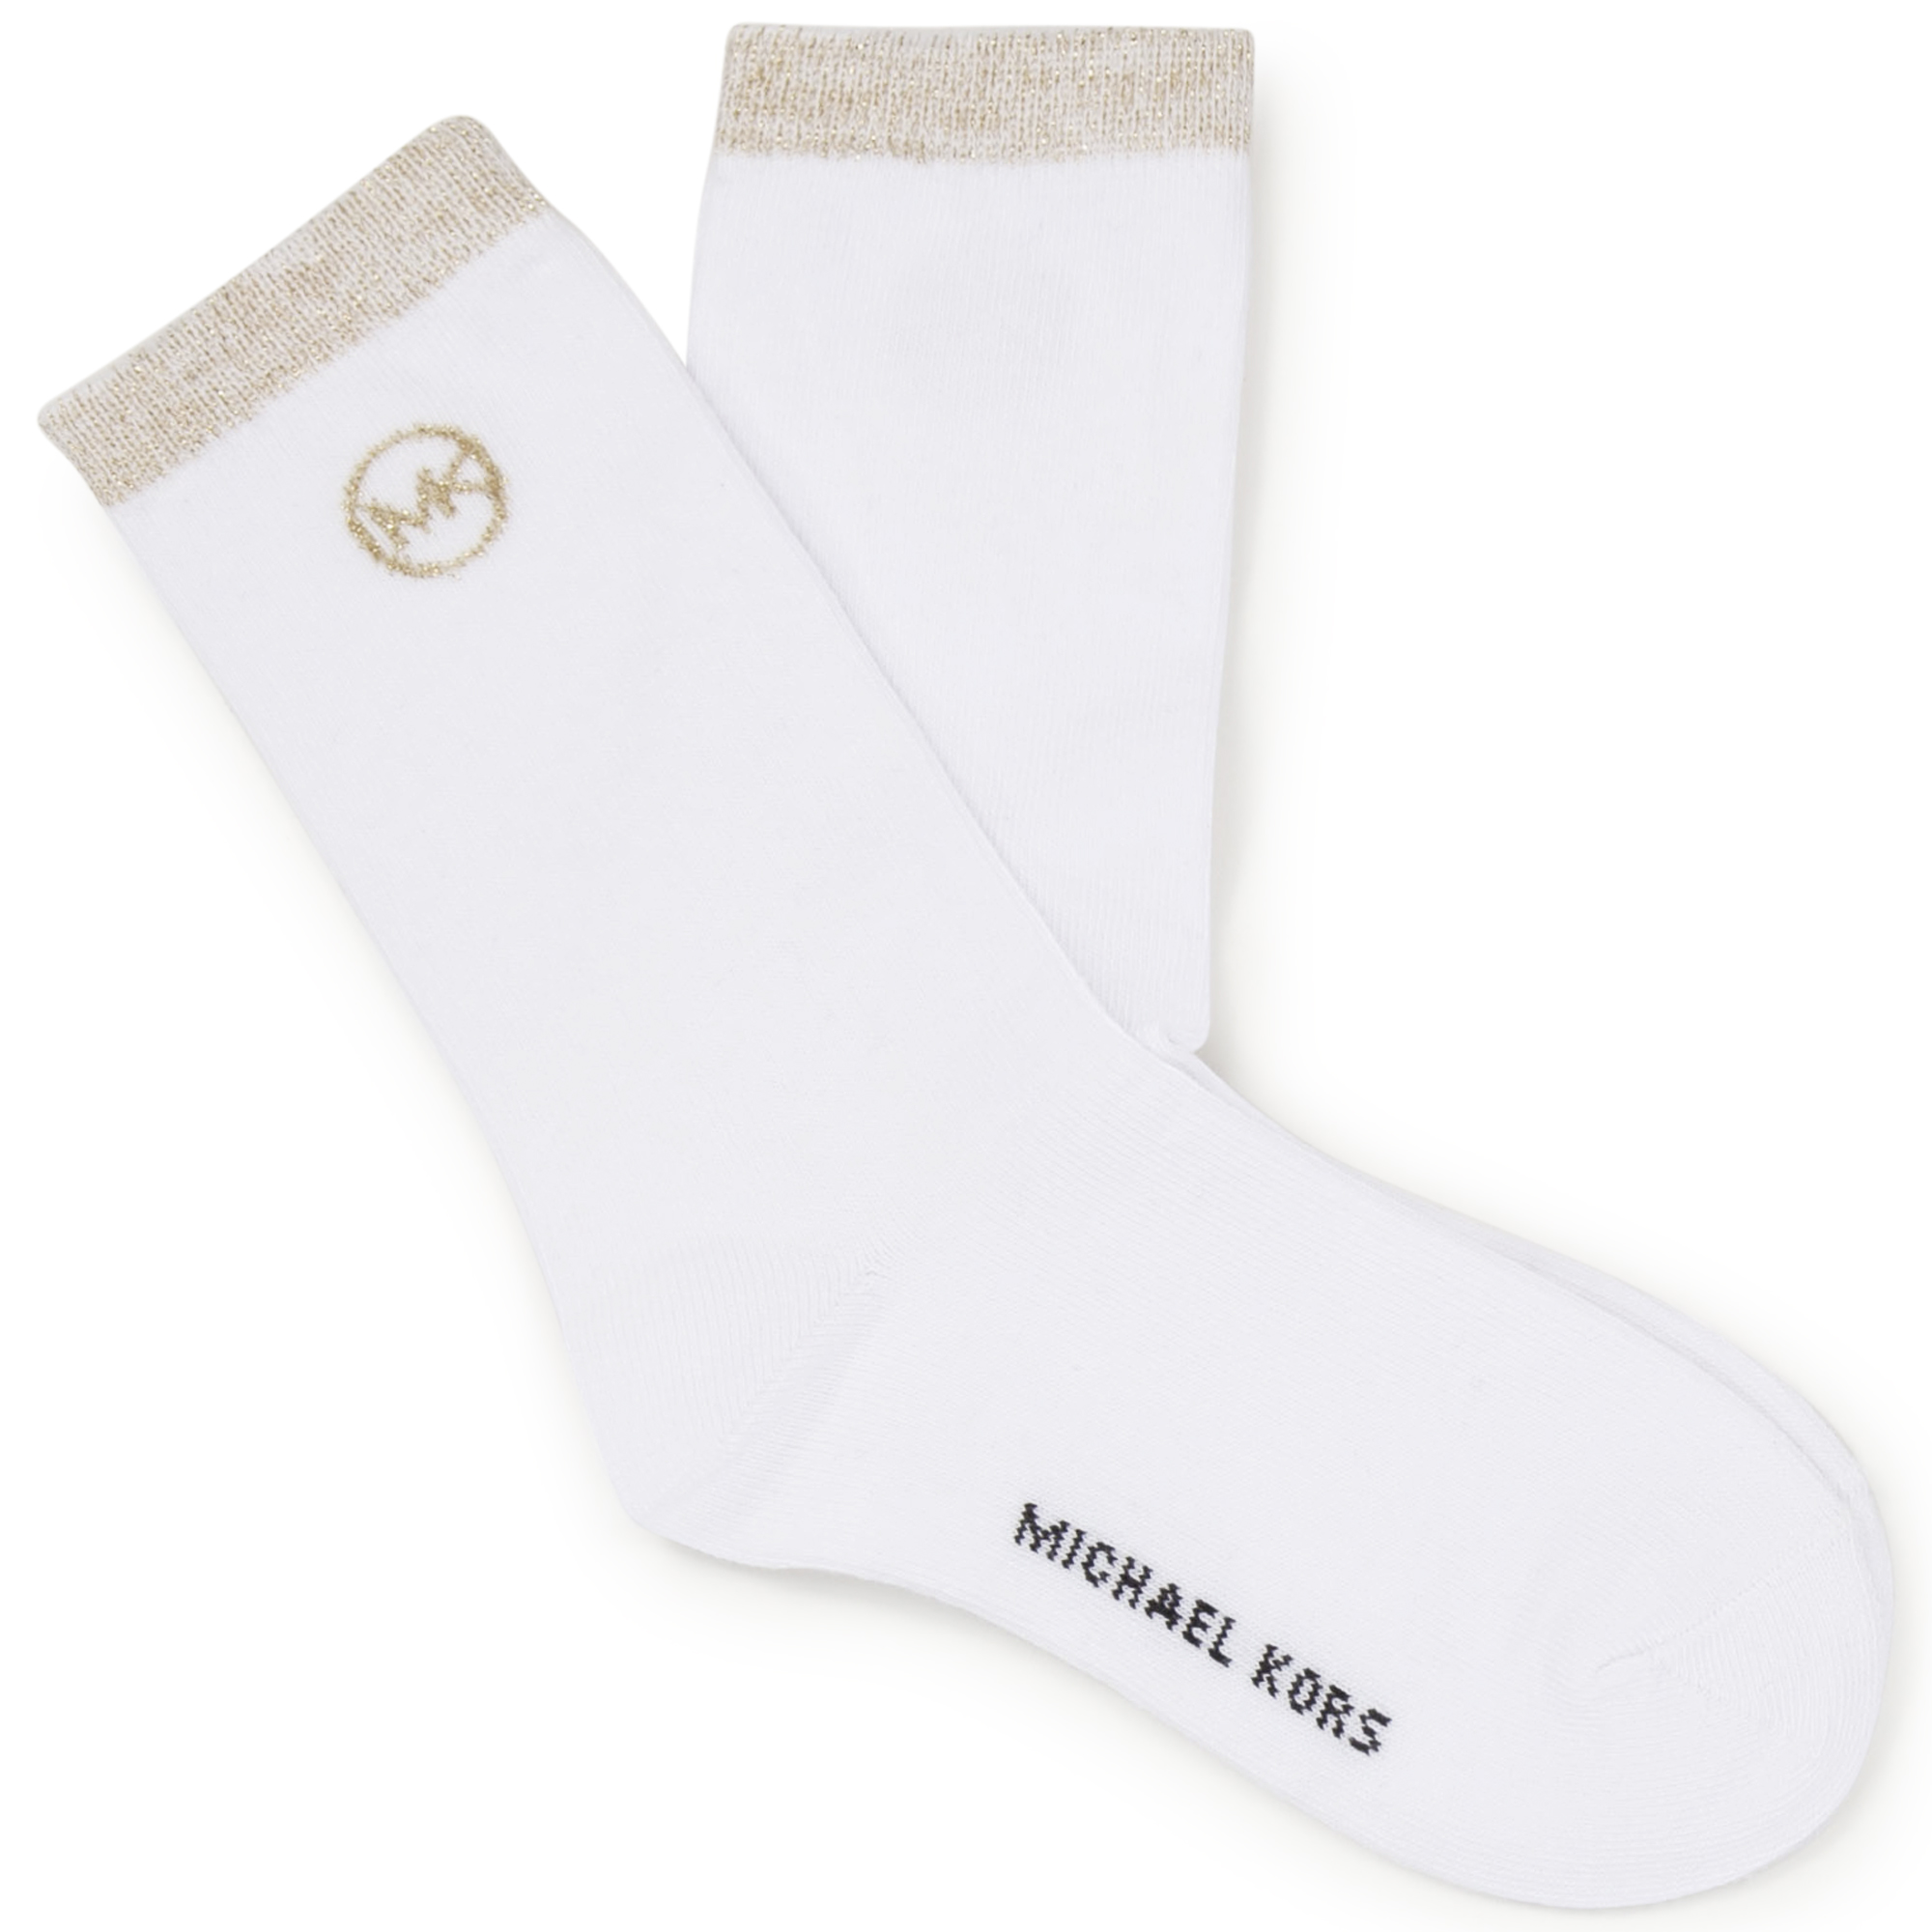 Golden socks MICHAEL KORS for GIRL